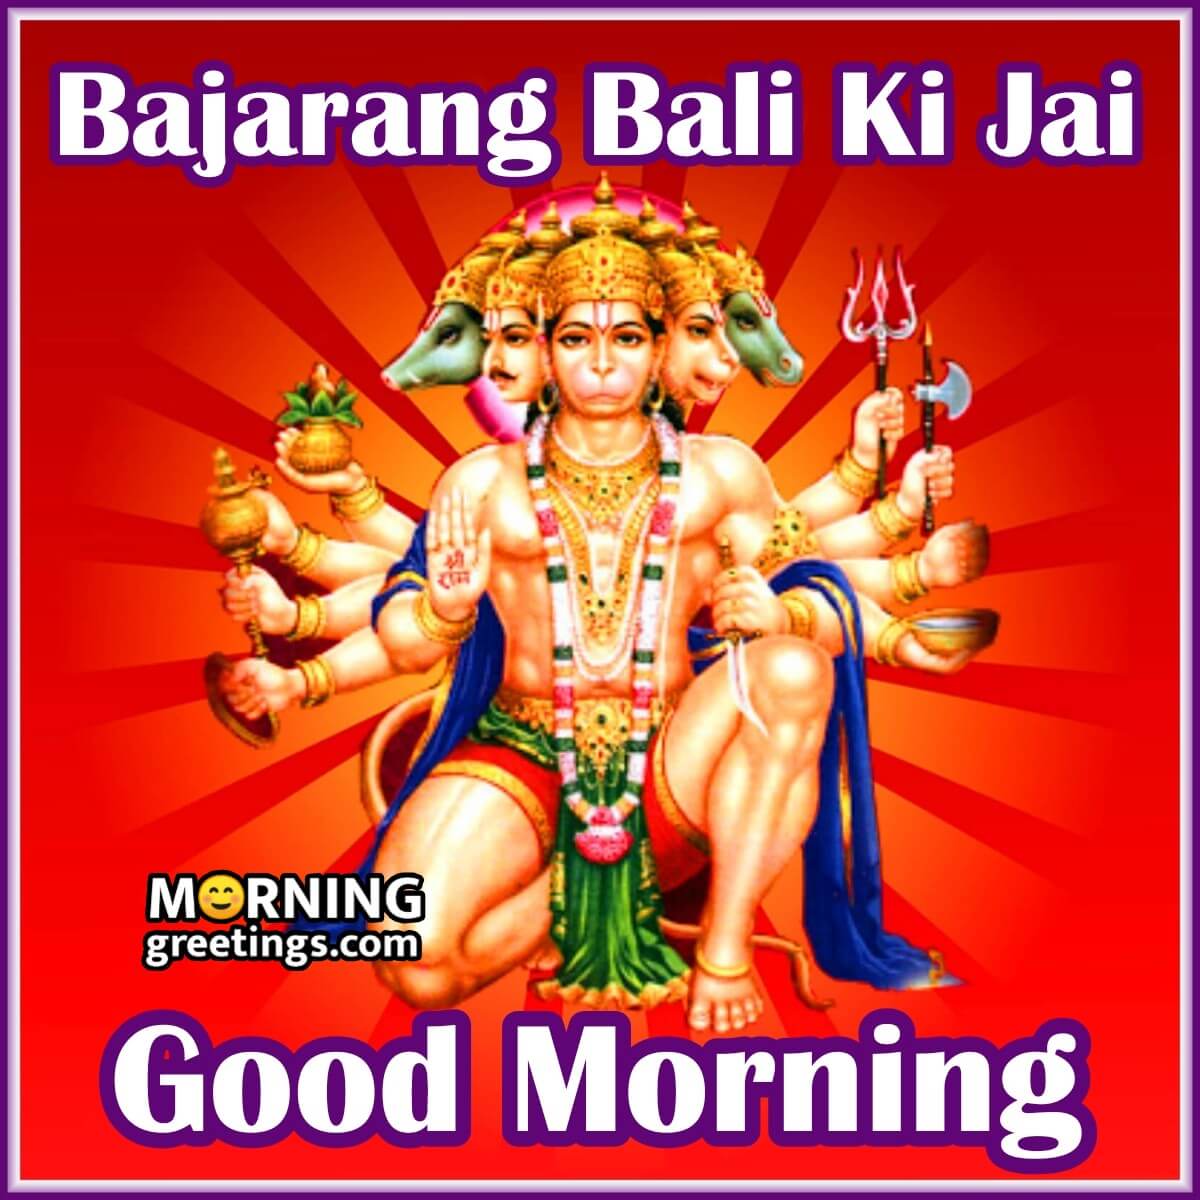 Good Morning Bajarang Bali Ki Jai